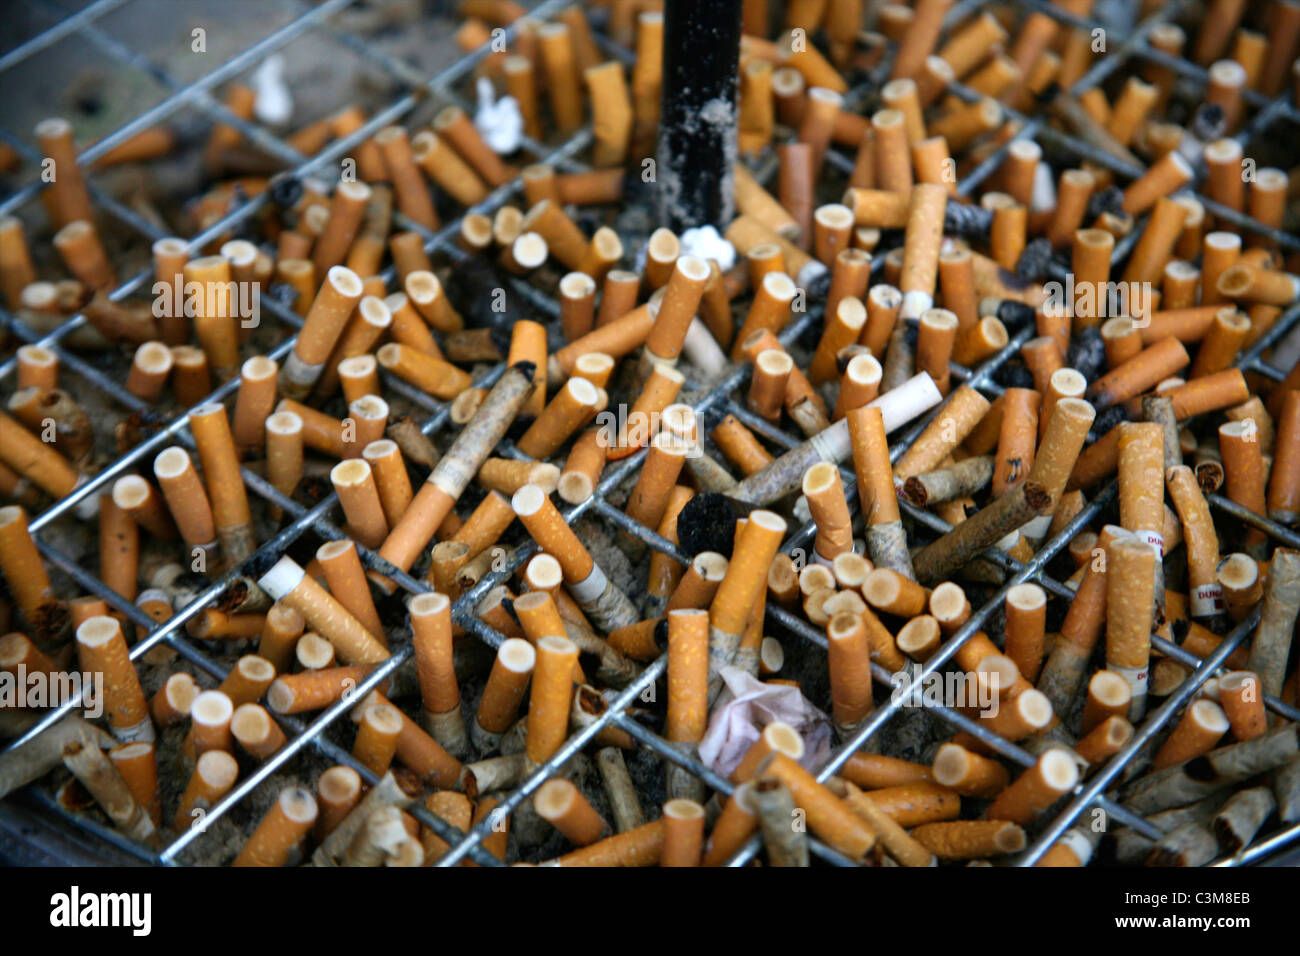 Il est interdit de fumer dans les lieux publi en Hollande Banque D'Images